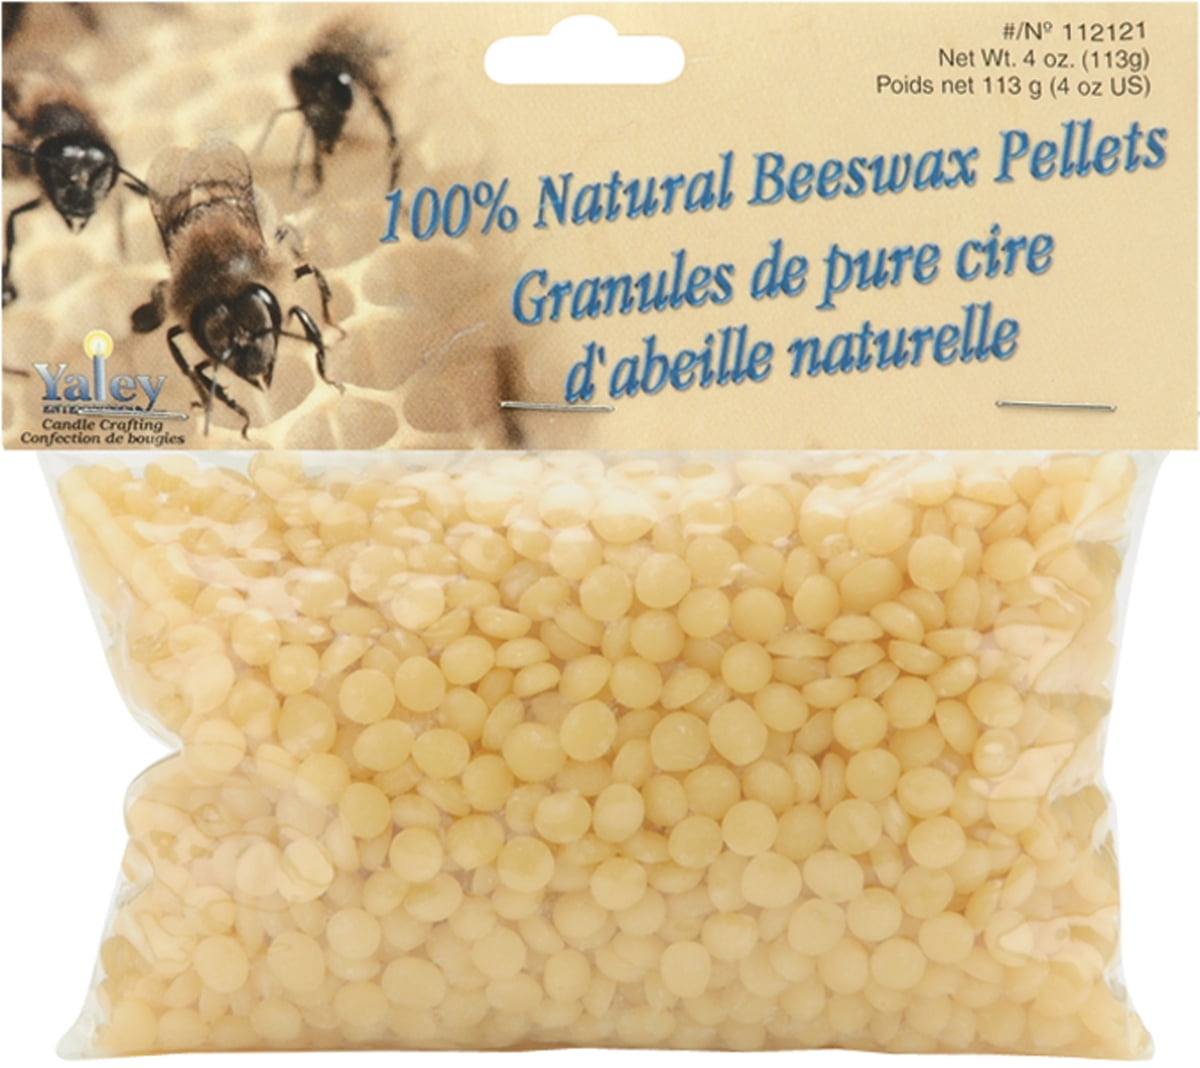 NBWAXG3 Natural Beeswax Pellets